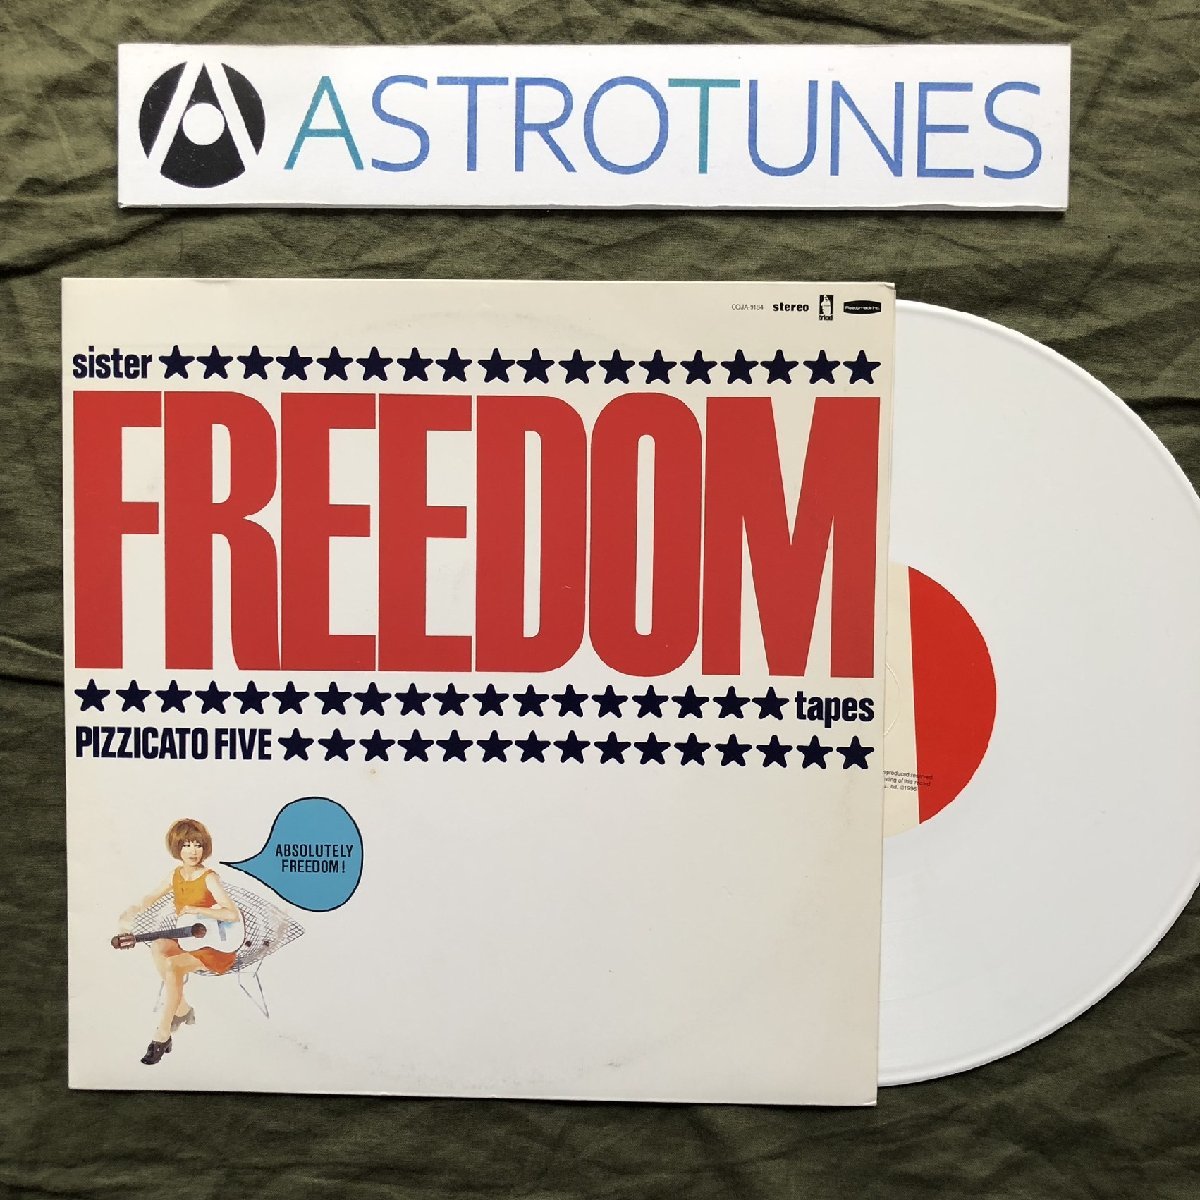 傷なし美盤 美ジャケ 激レア 1996年 ピチカート・ファイヴ Pizzicato Five 10''カラーレコード Sister Freedom Tapes J-Pop 小西康陽_画像1